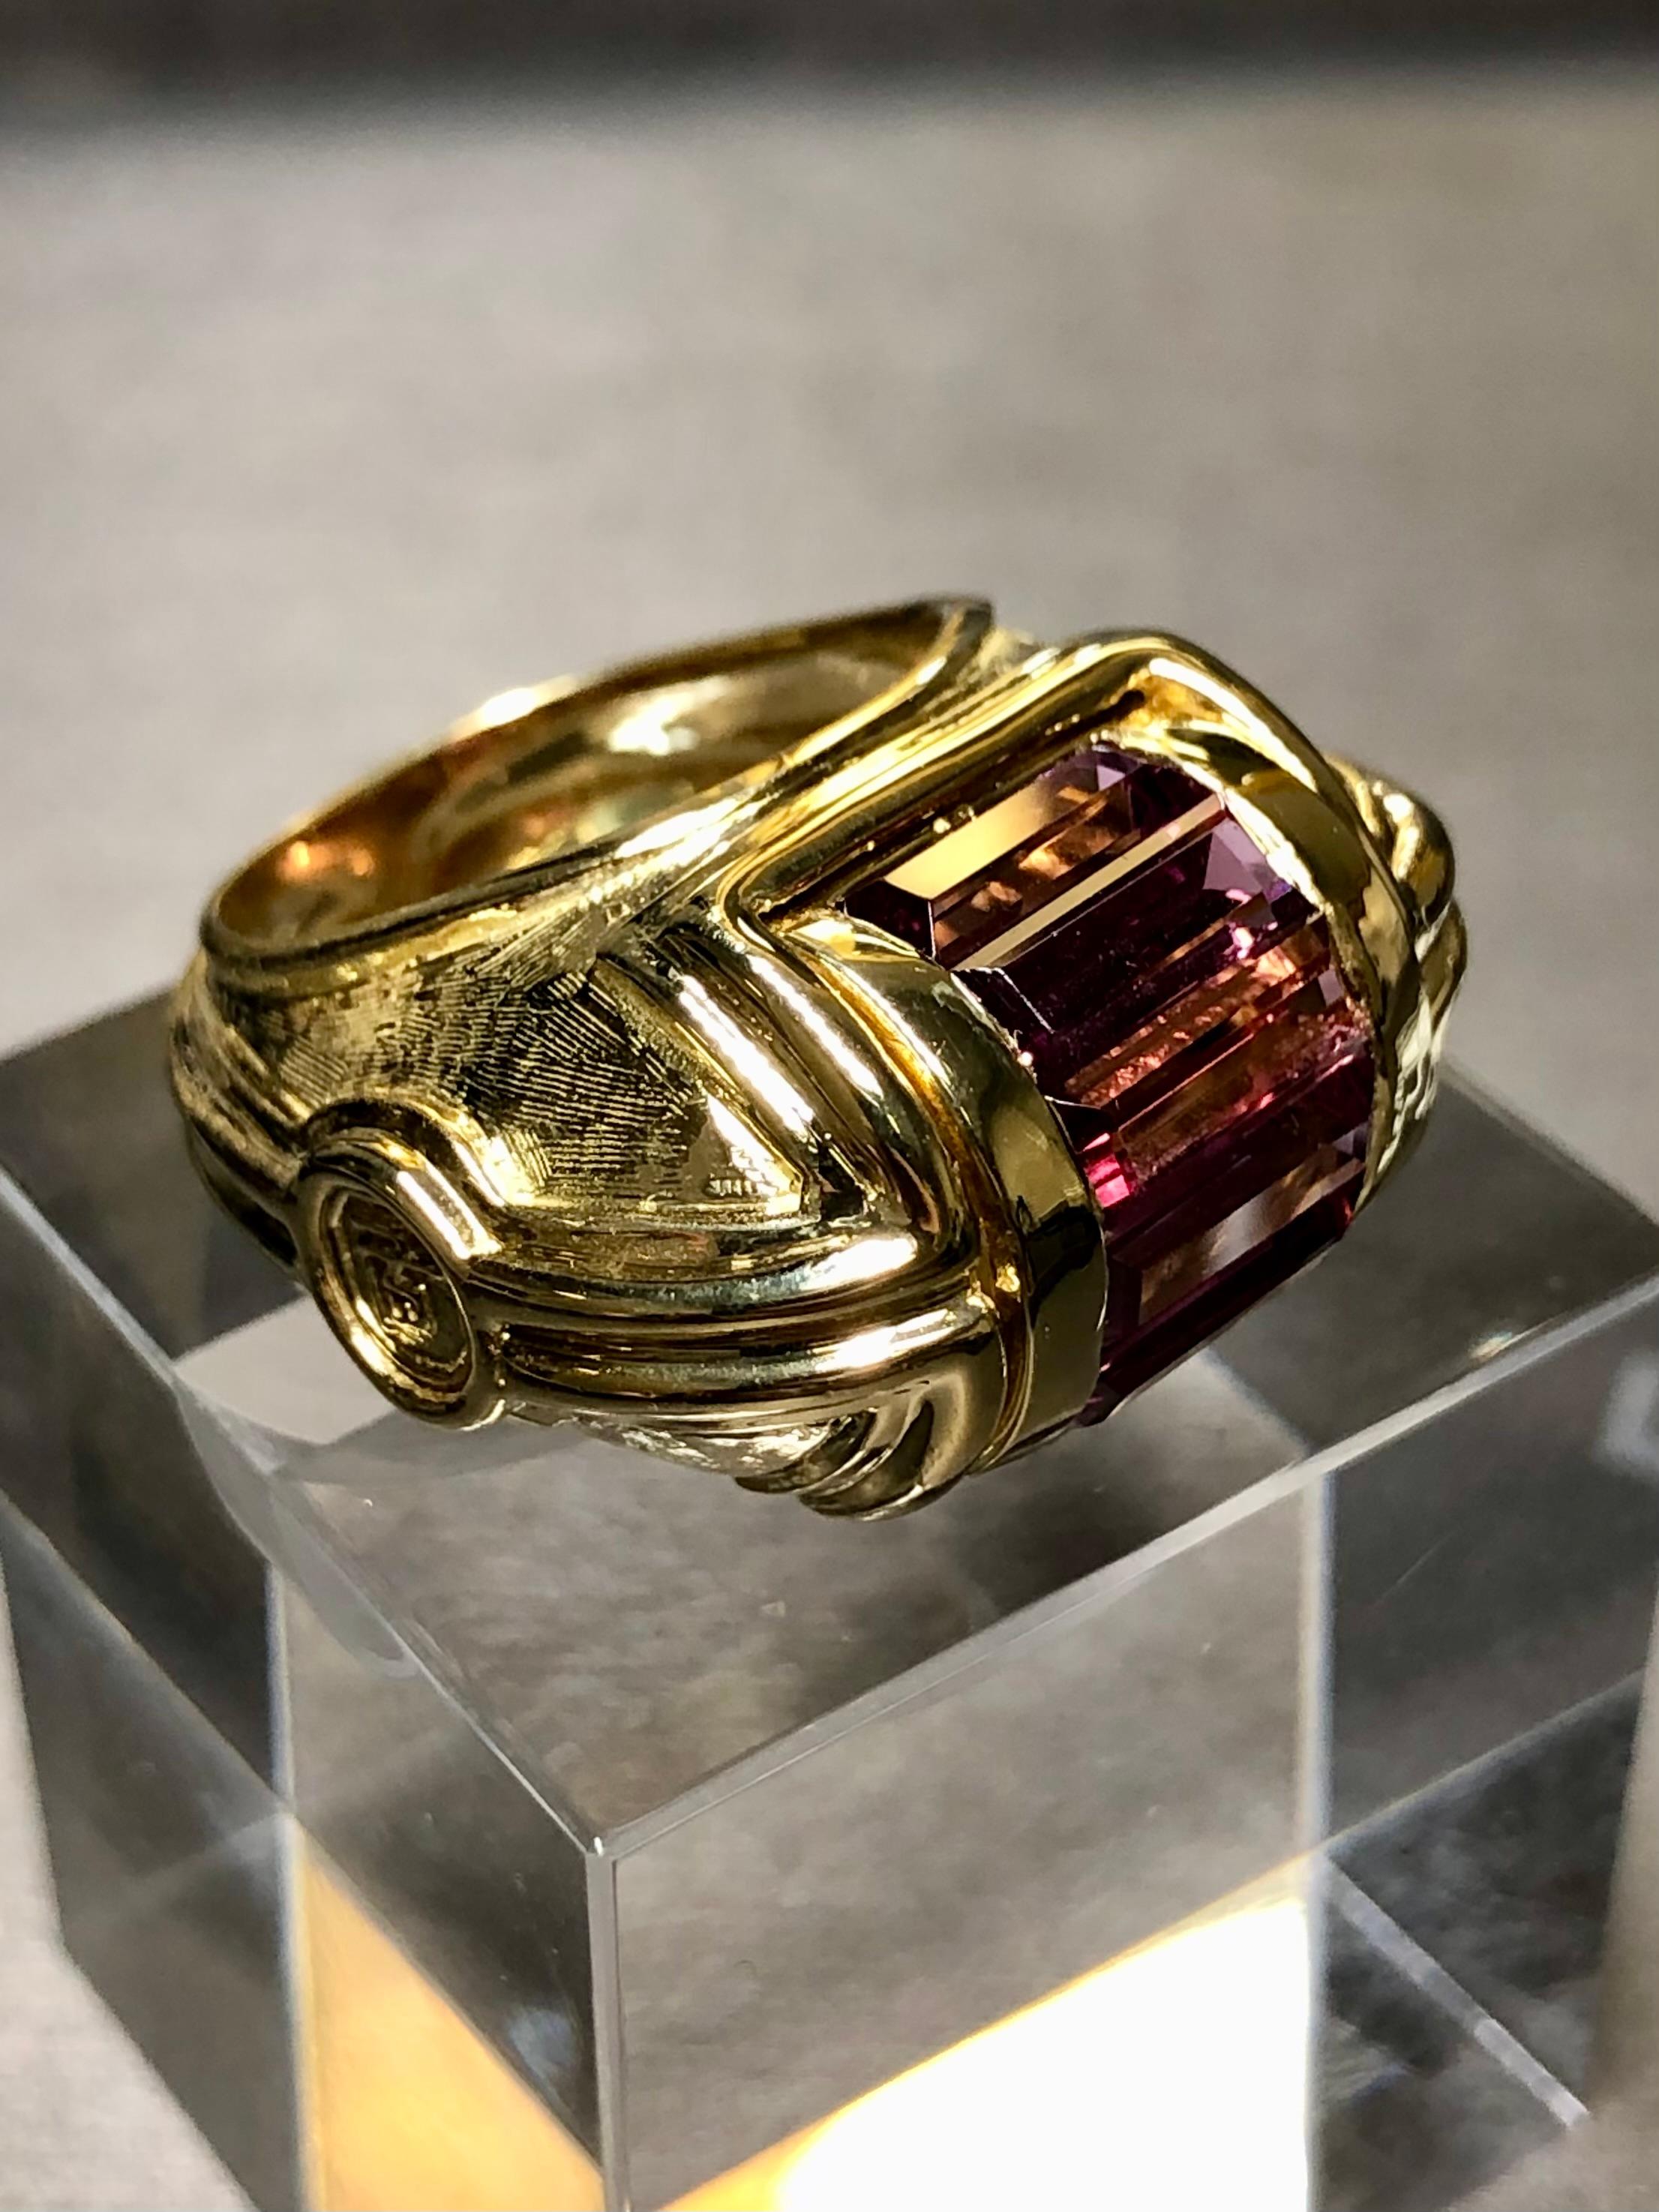 
Ein zeitgemäßer und kühner Ring aus schwerem 18-karätigem Gelbgold, besetzt mit ca. 12cttw natürlichen, länglichen Turmalinen in der Mitte. Dieser Ring wurde von einem bestimmten Designer entworfen, aber leider von keinem, den wir kennen. Schön